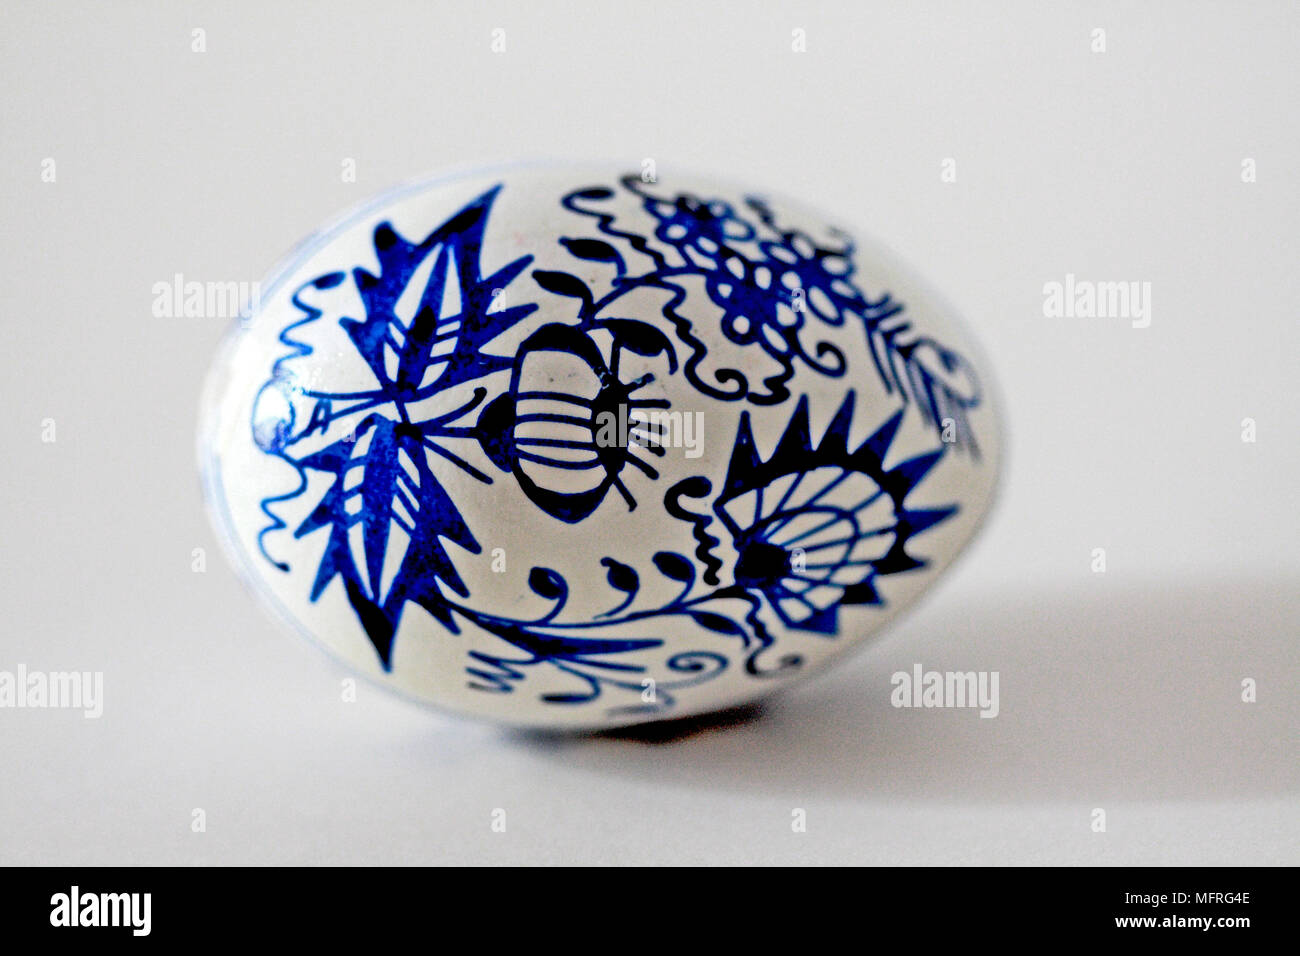 Oeuf de Pâques en République tchèque avec l'oignon bleu sur fond blanc. Les oeufs sont décorés sur coquille. Banque D'Images